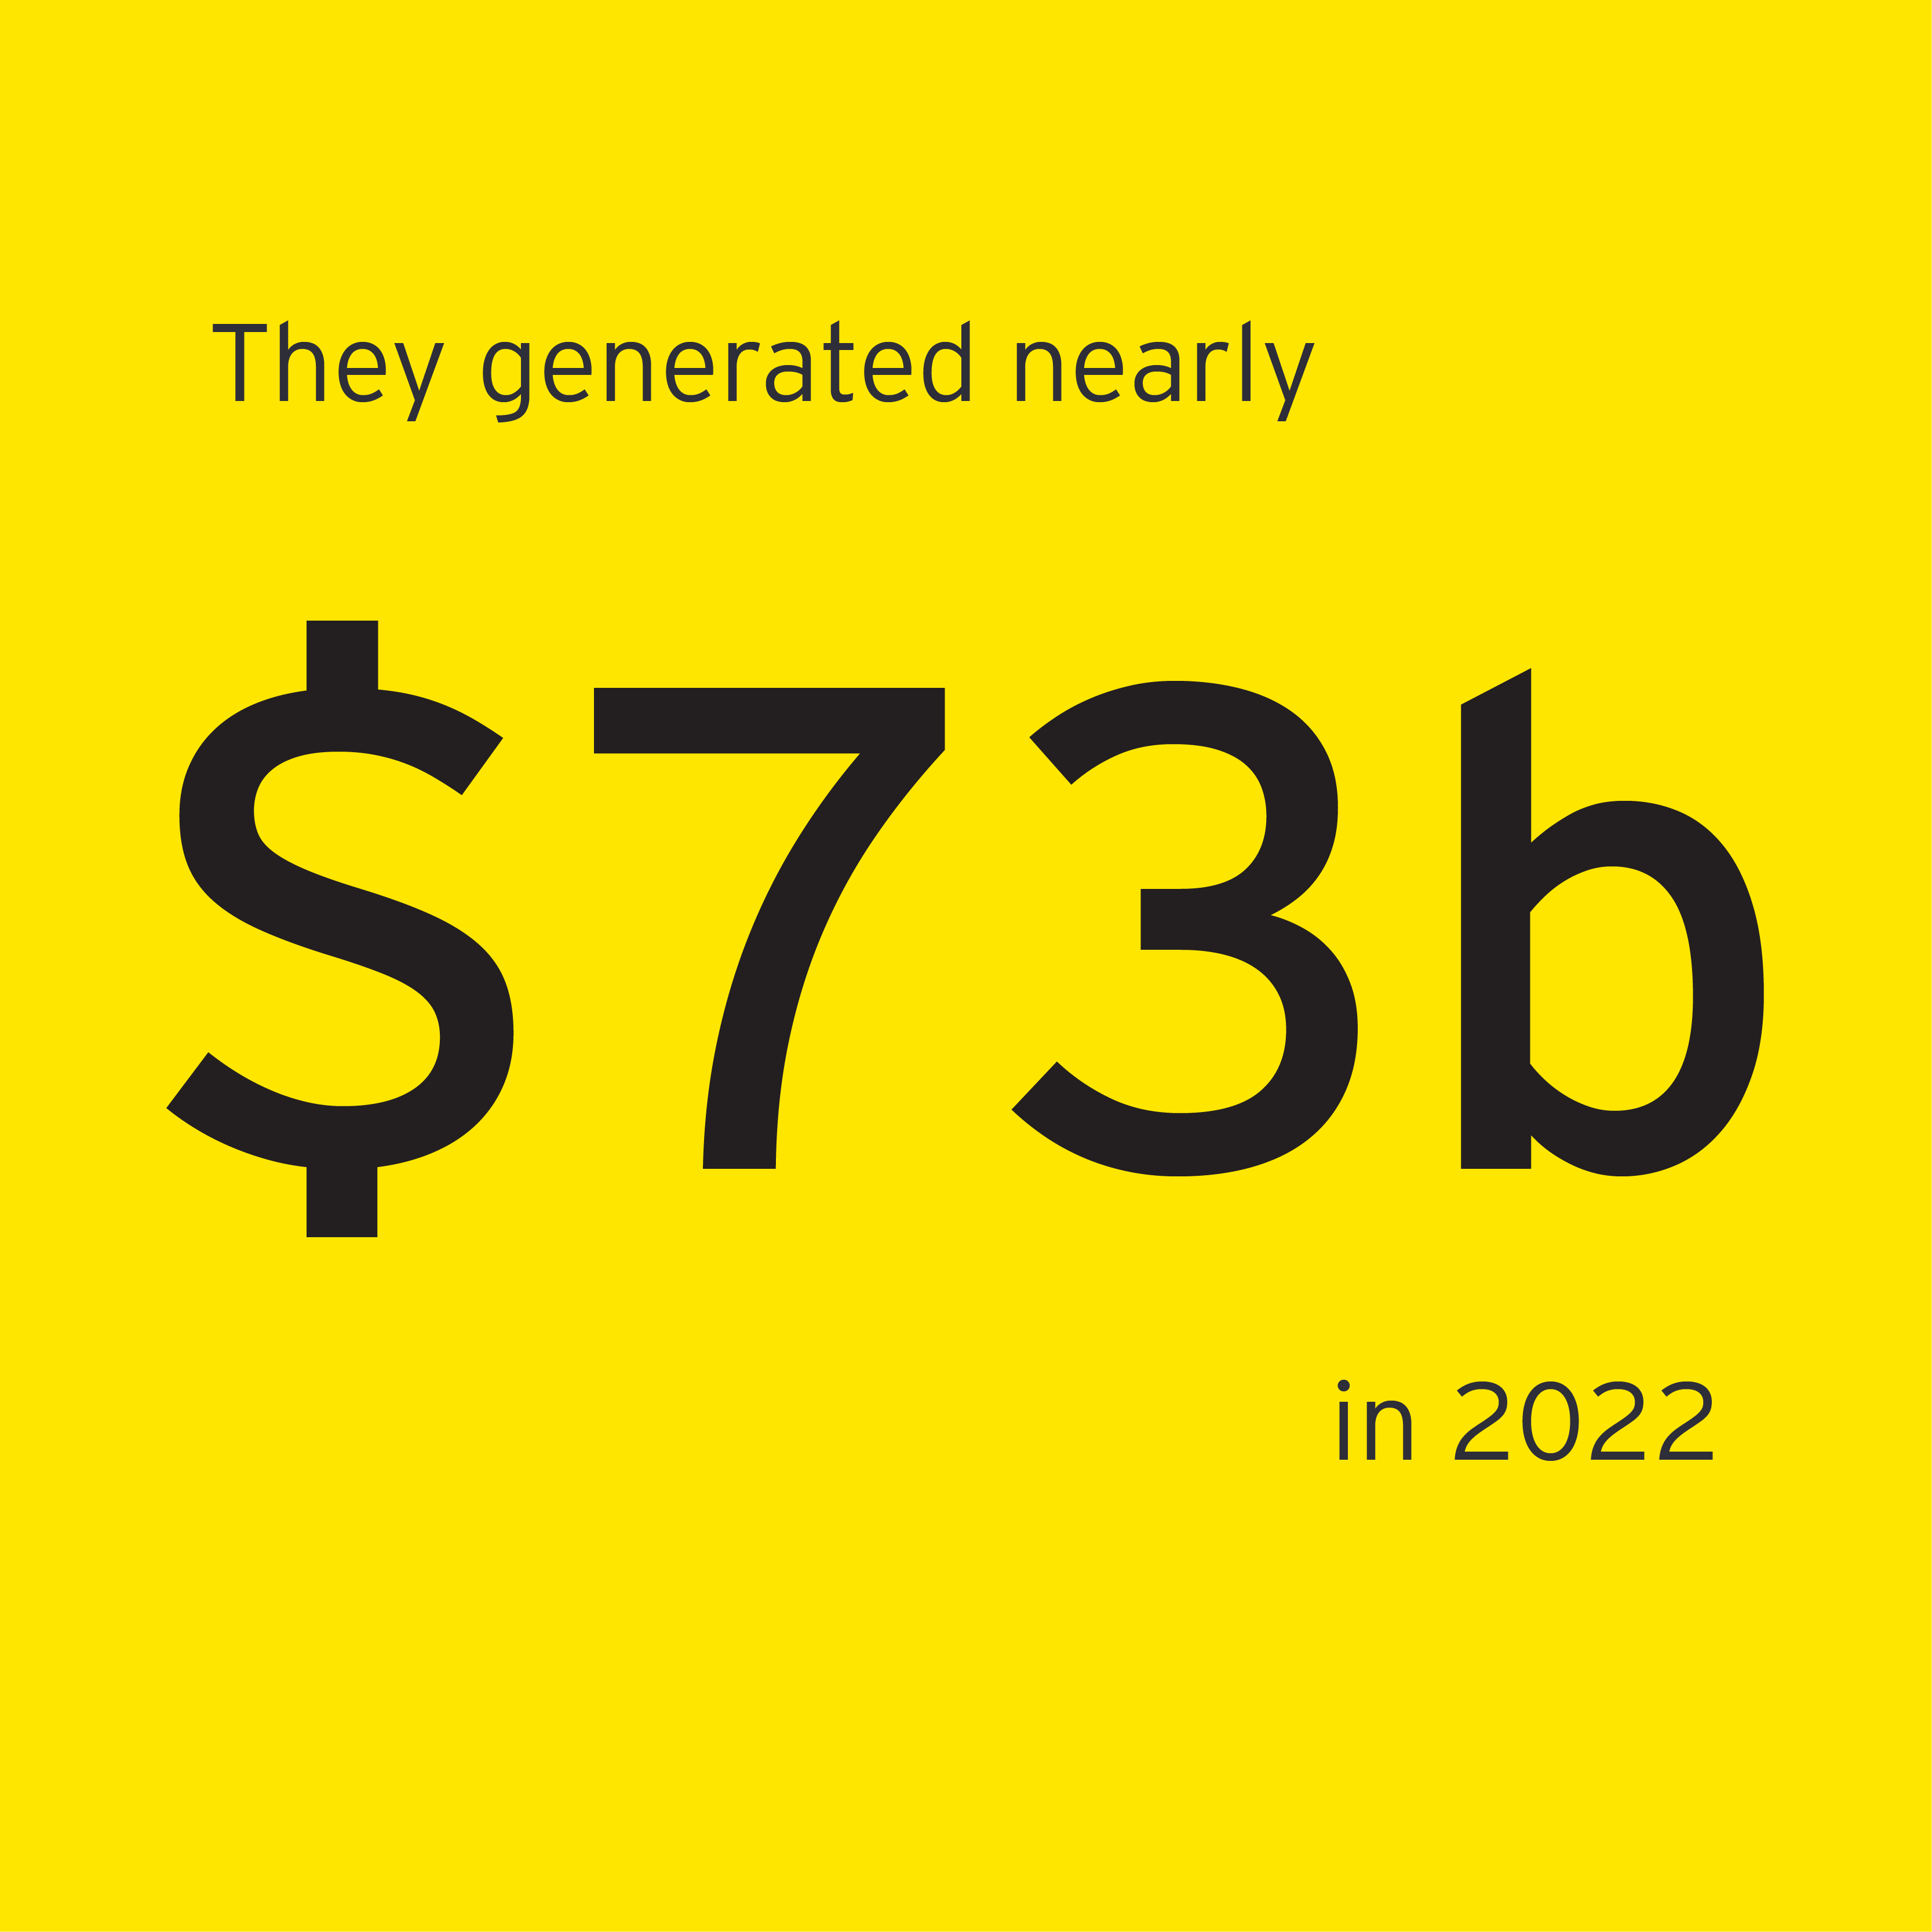 Nearly $73 billion in revenue generated by EOY winners in 2022